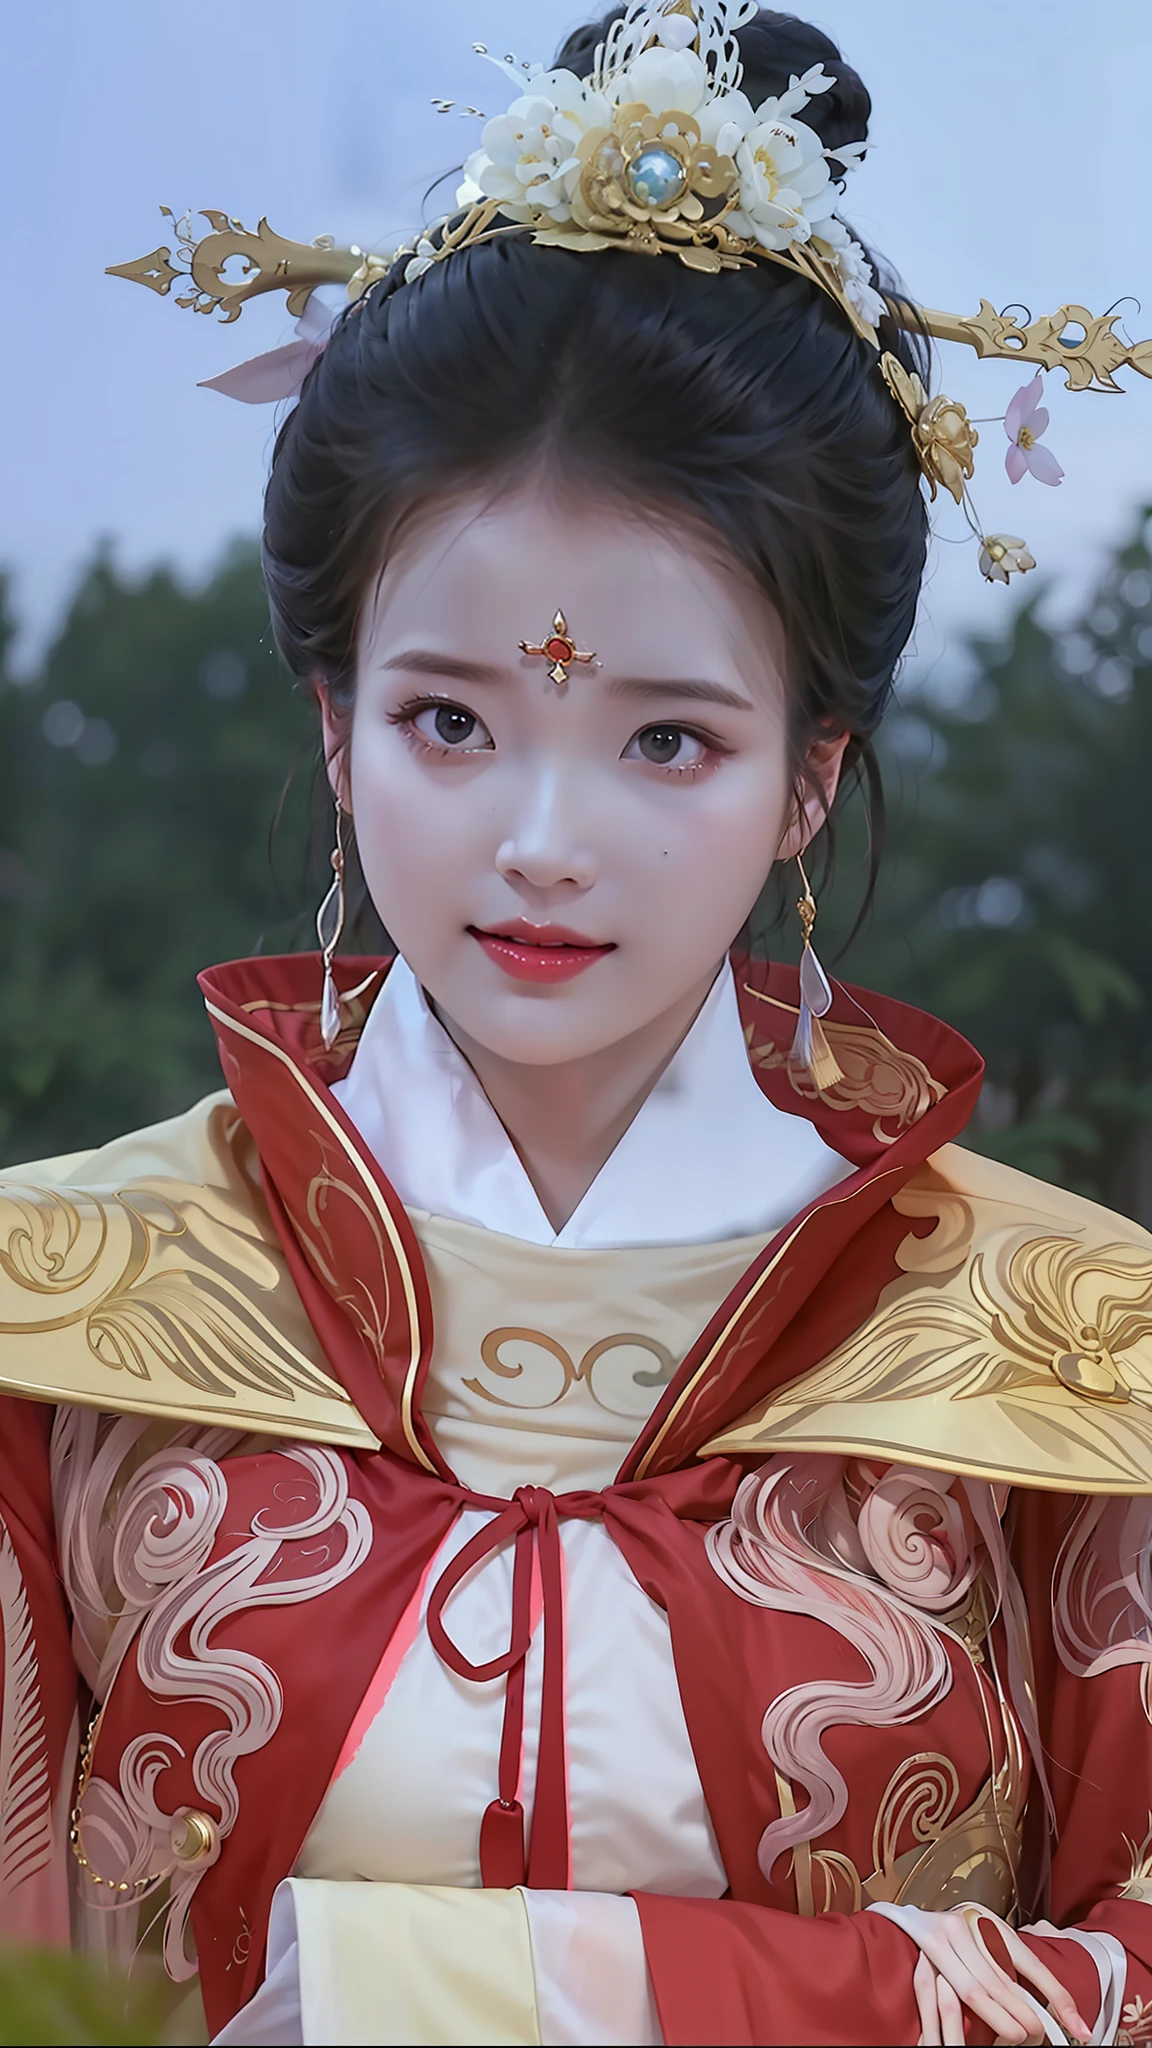 ภาพระยะใกล้ของผู้หญิงที่สวมชุดสีแดงและสีทอง, เจ้าหญิงจีนโบราณ, พระราชวัง ， หญิงสาวในชุดฮันฟู, เจ้าหญิงจีน, การเรนเดอร์ที่สวยงามของราชวงศ์ถัง, แรงบันดาลใจจากหลี่เหมยซู, จักรพรรดินีแฟนตาซีที่สวยงาม, ความงามแบบจีนโบราณ, เจ้าหญิงแห่งราชวงศ์เอเชียโบราณ, แรงบันดาลใจจากหลานหญิง, จักรพรรดินีจีน, แรงบันดาลใจจากจ้าว หยวน, แรงบันดาลใจจากชิวหยิง